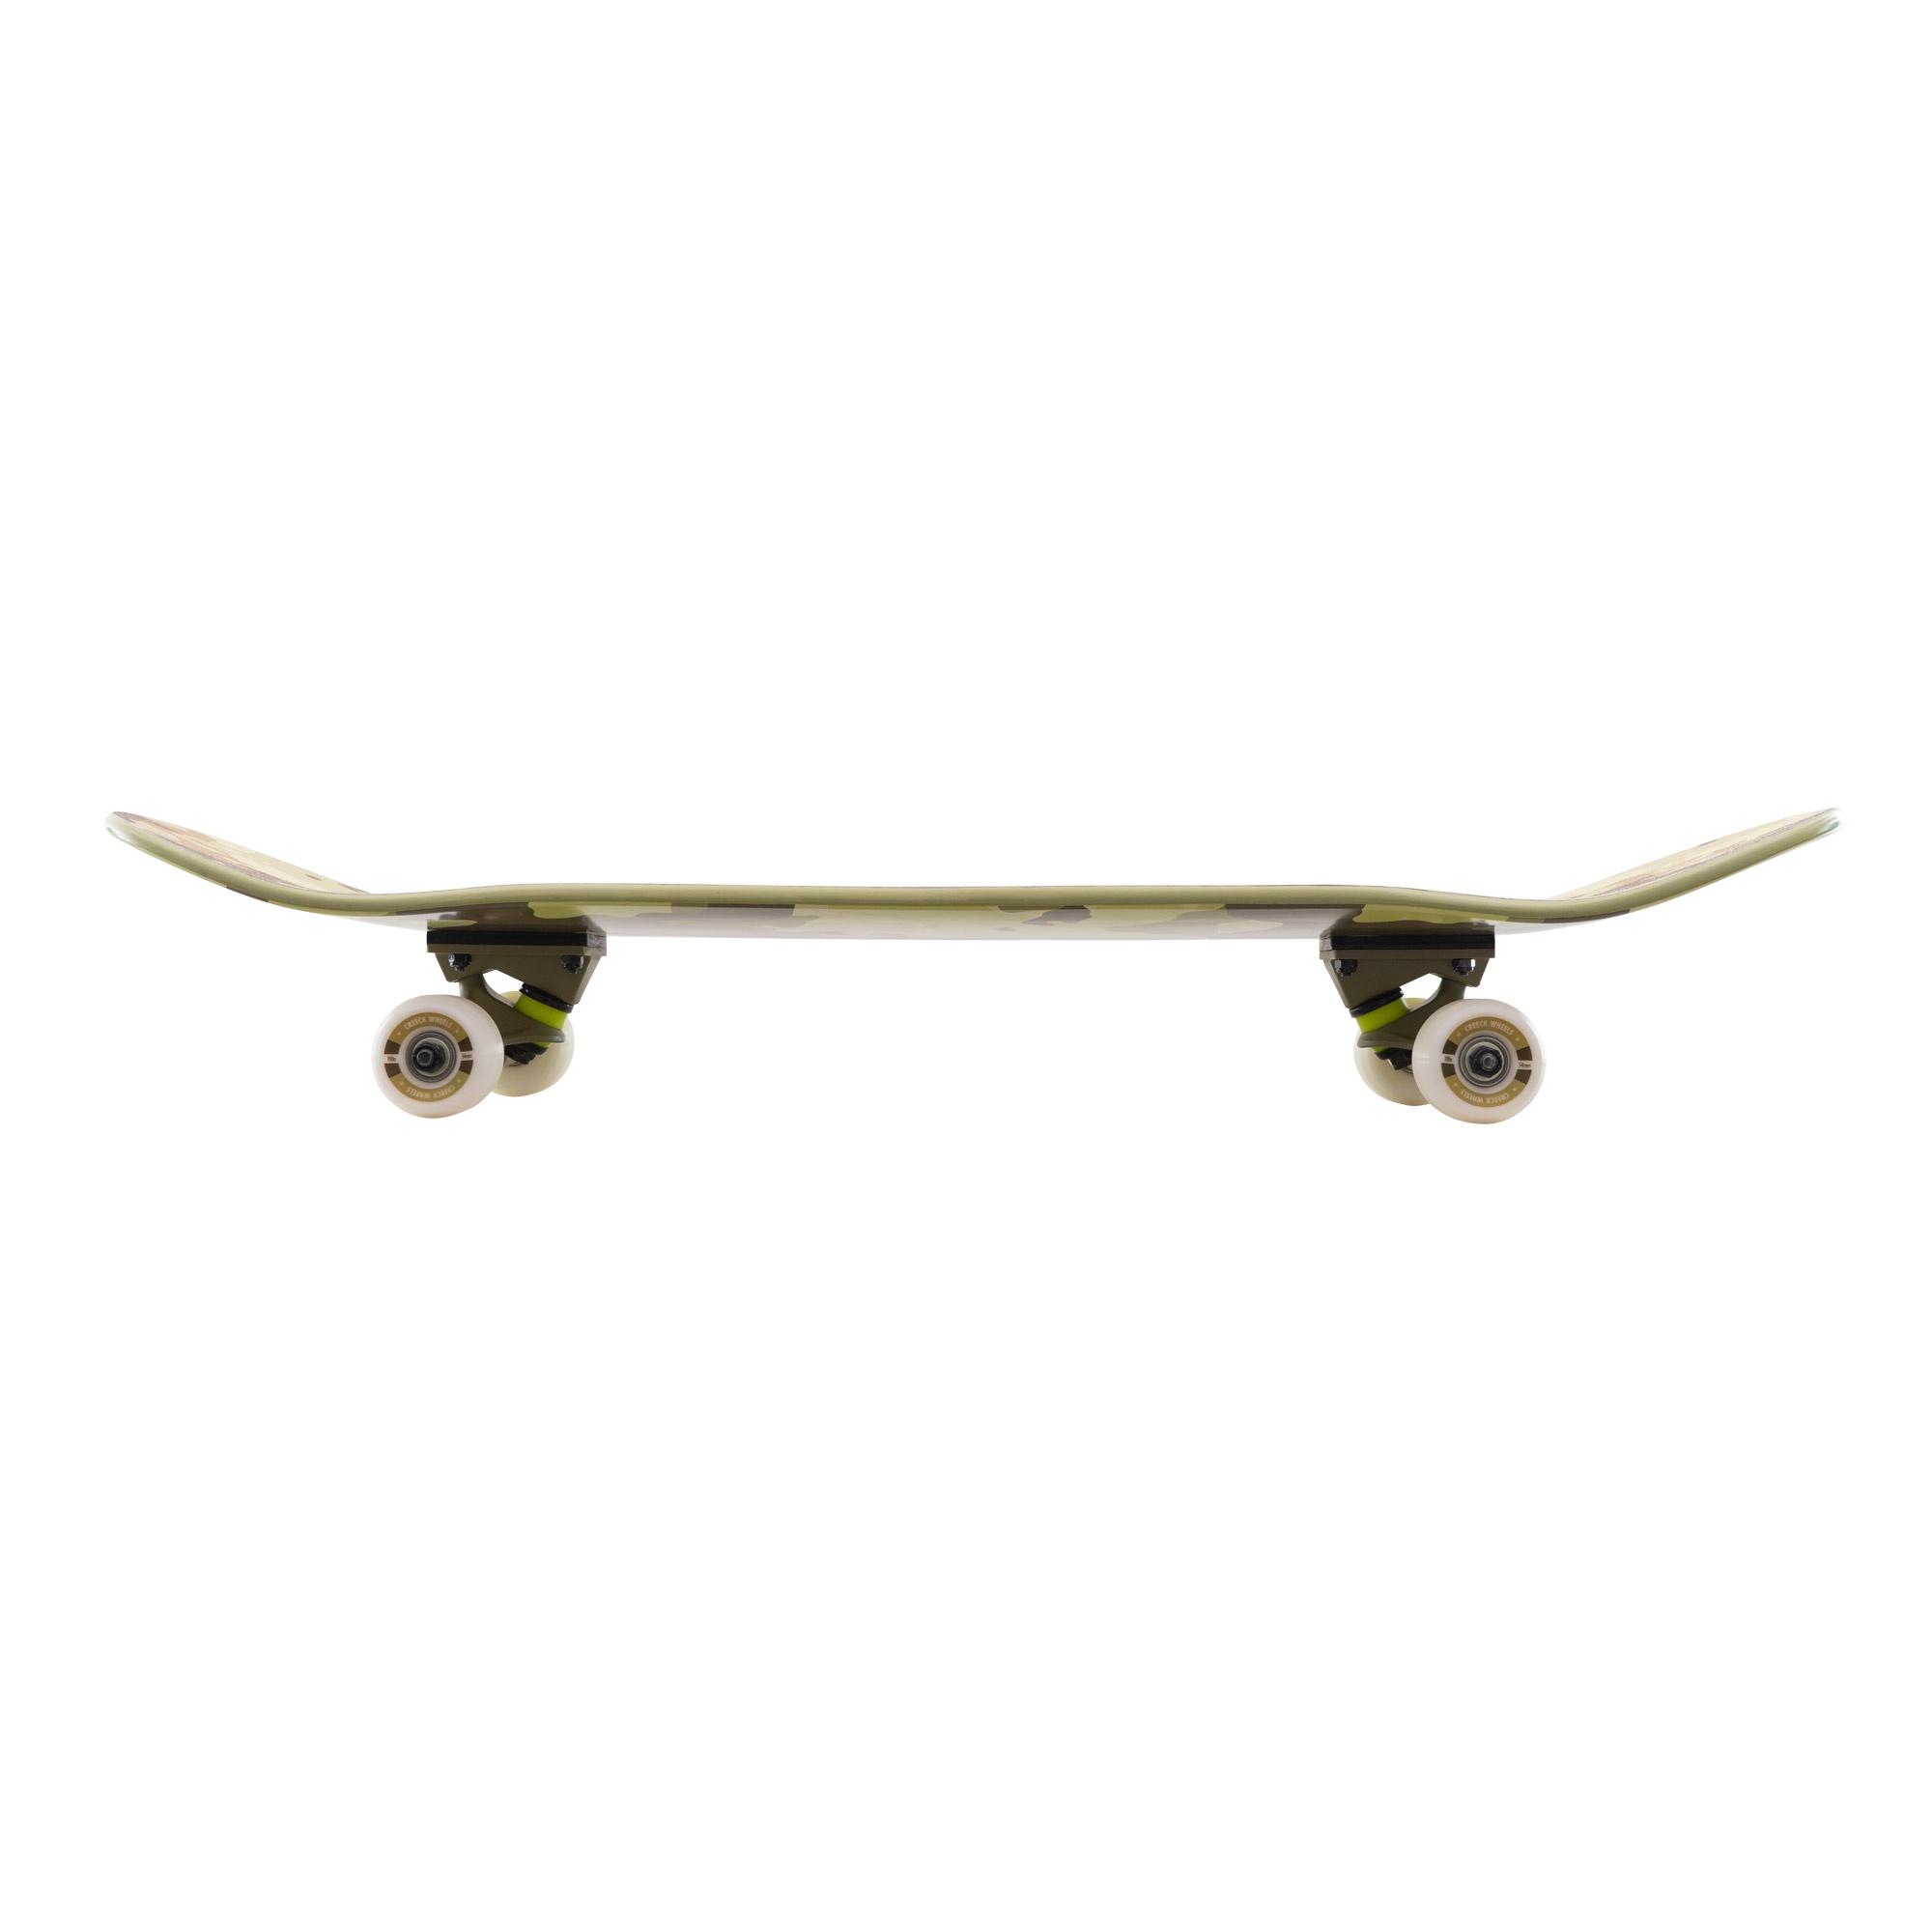 Skateboard Completo Miller Desert Arce 32"x8,25" Abec7 Ruedas Creek Shr 53mm